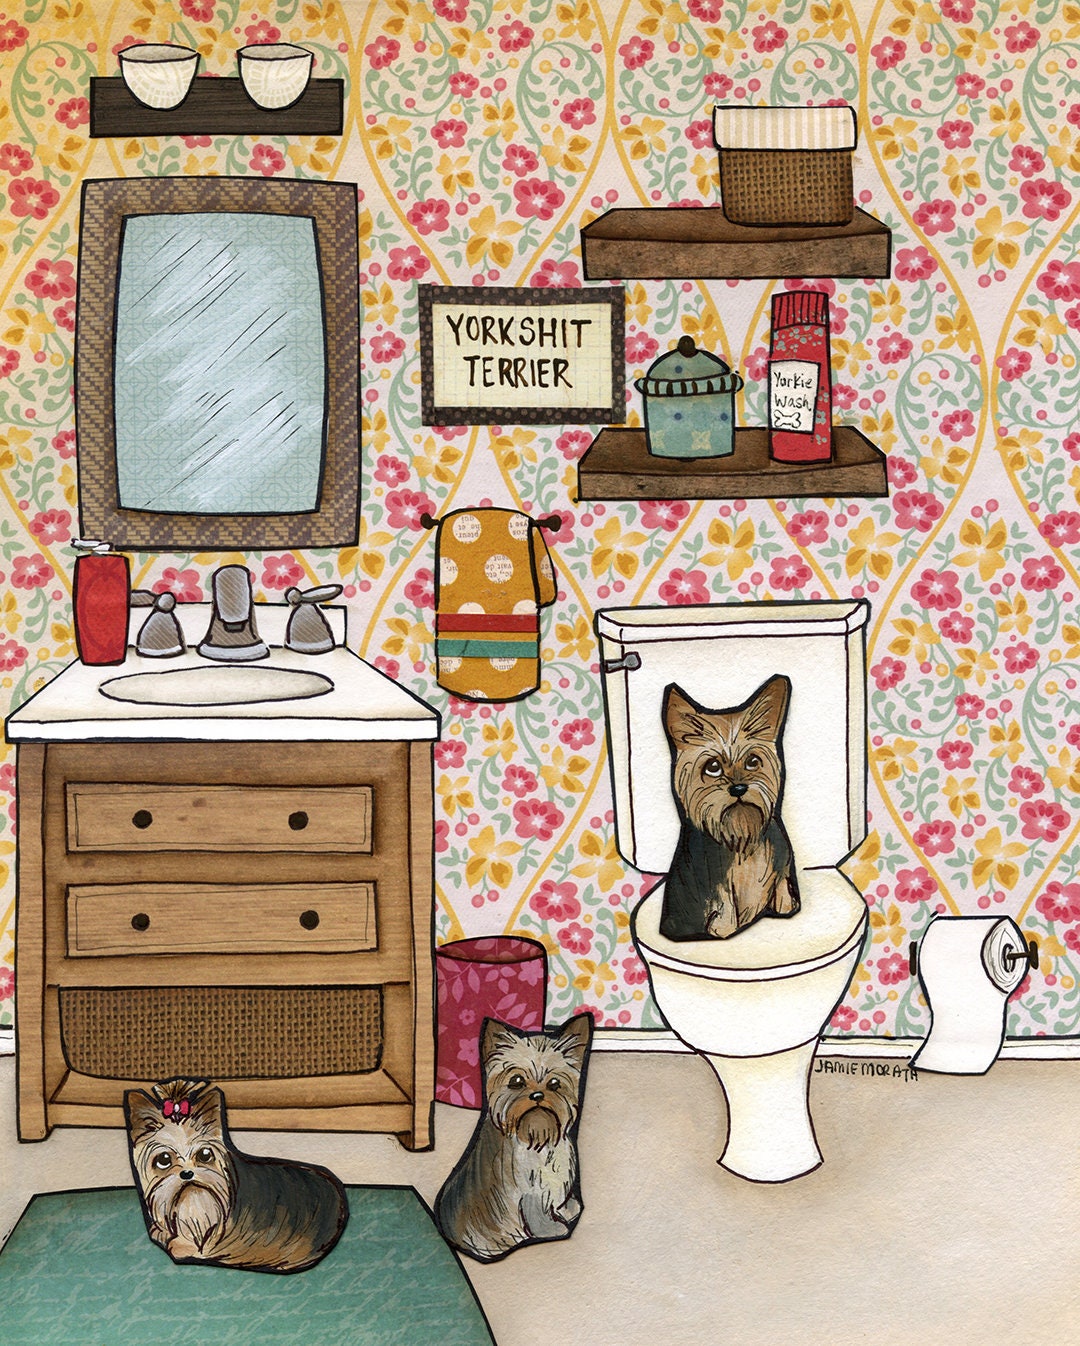 Yorkshit Terrier, art print